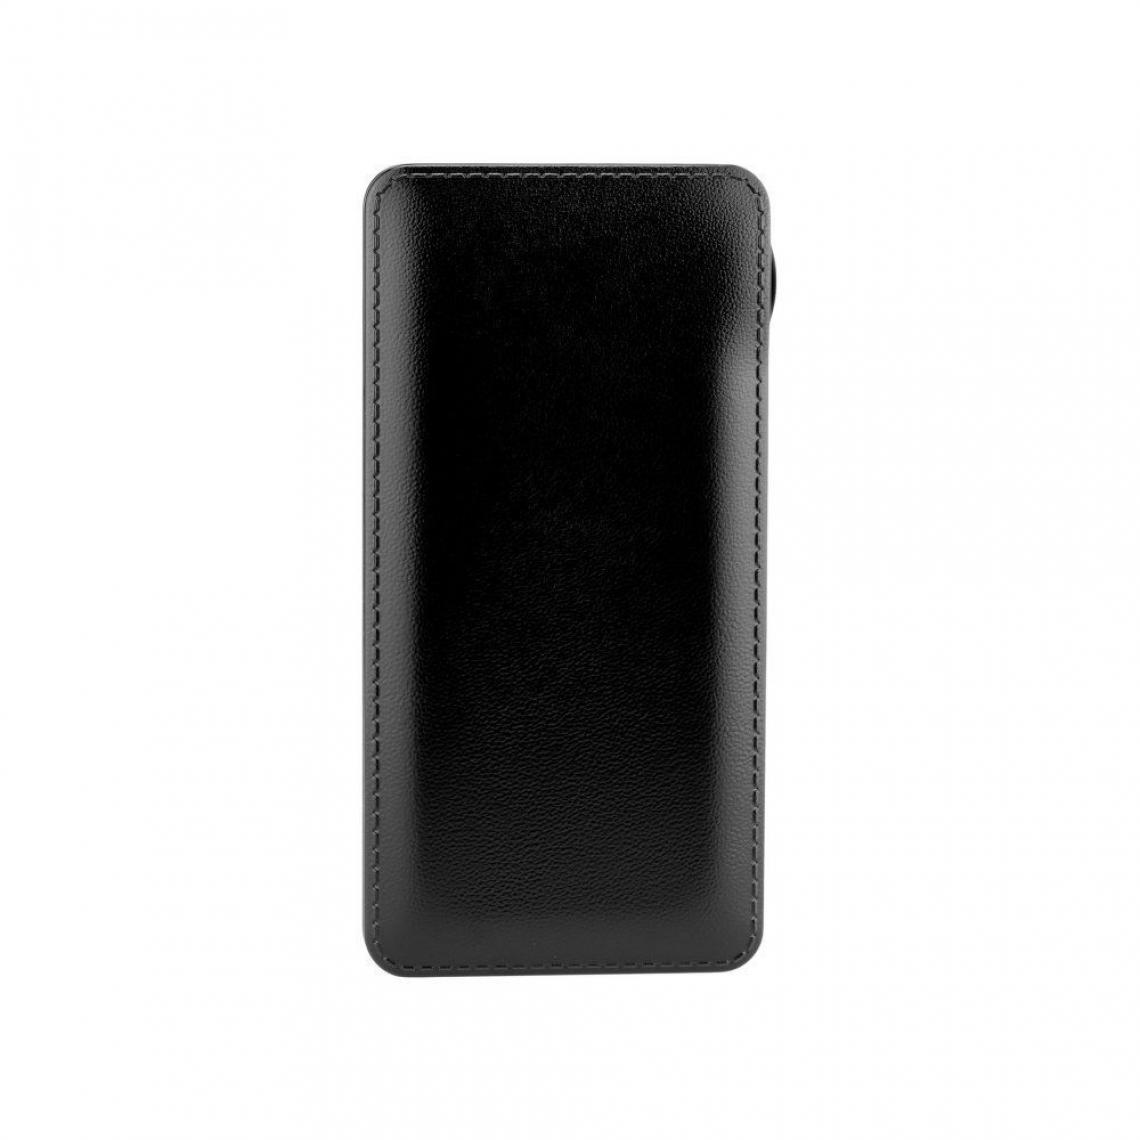 Ozzzo - Chargeur batterie externe 20000 mAh powerbank ozzzo noir pour TCL Tab 10S - Autres accessoires smartphone